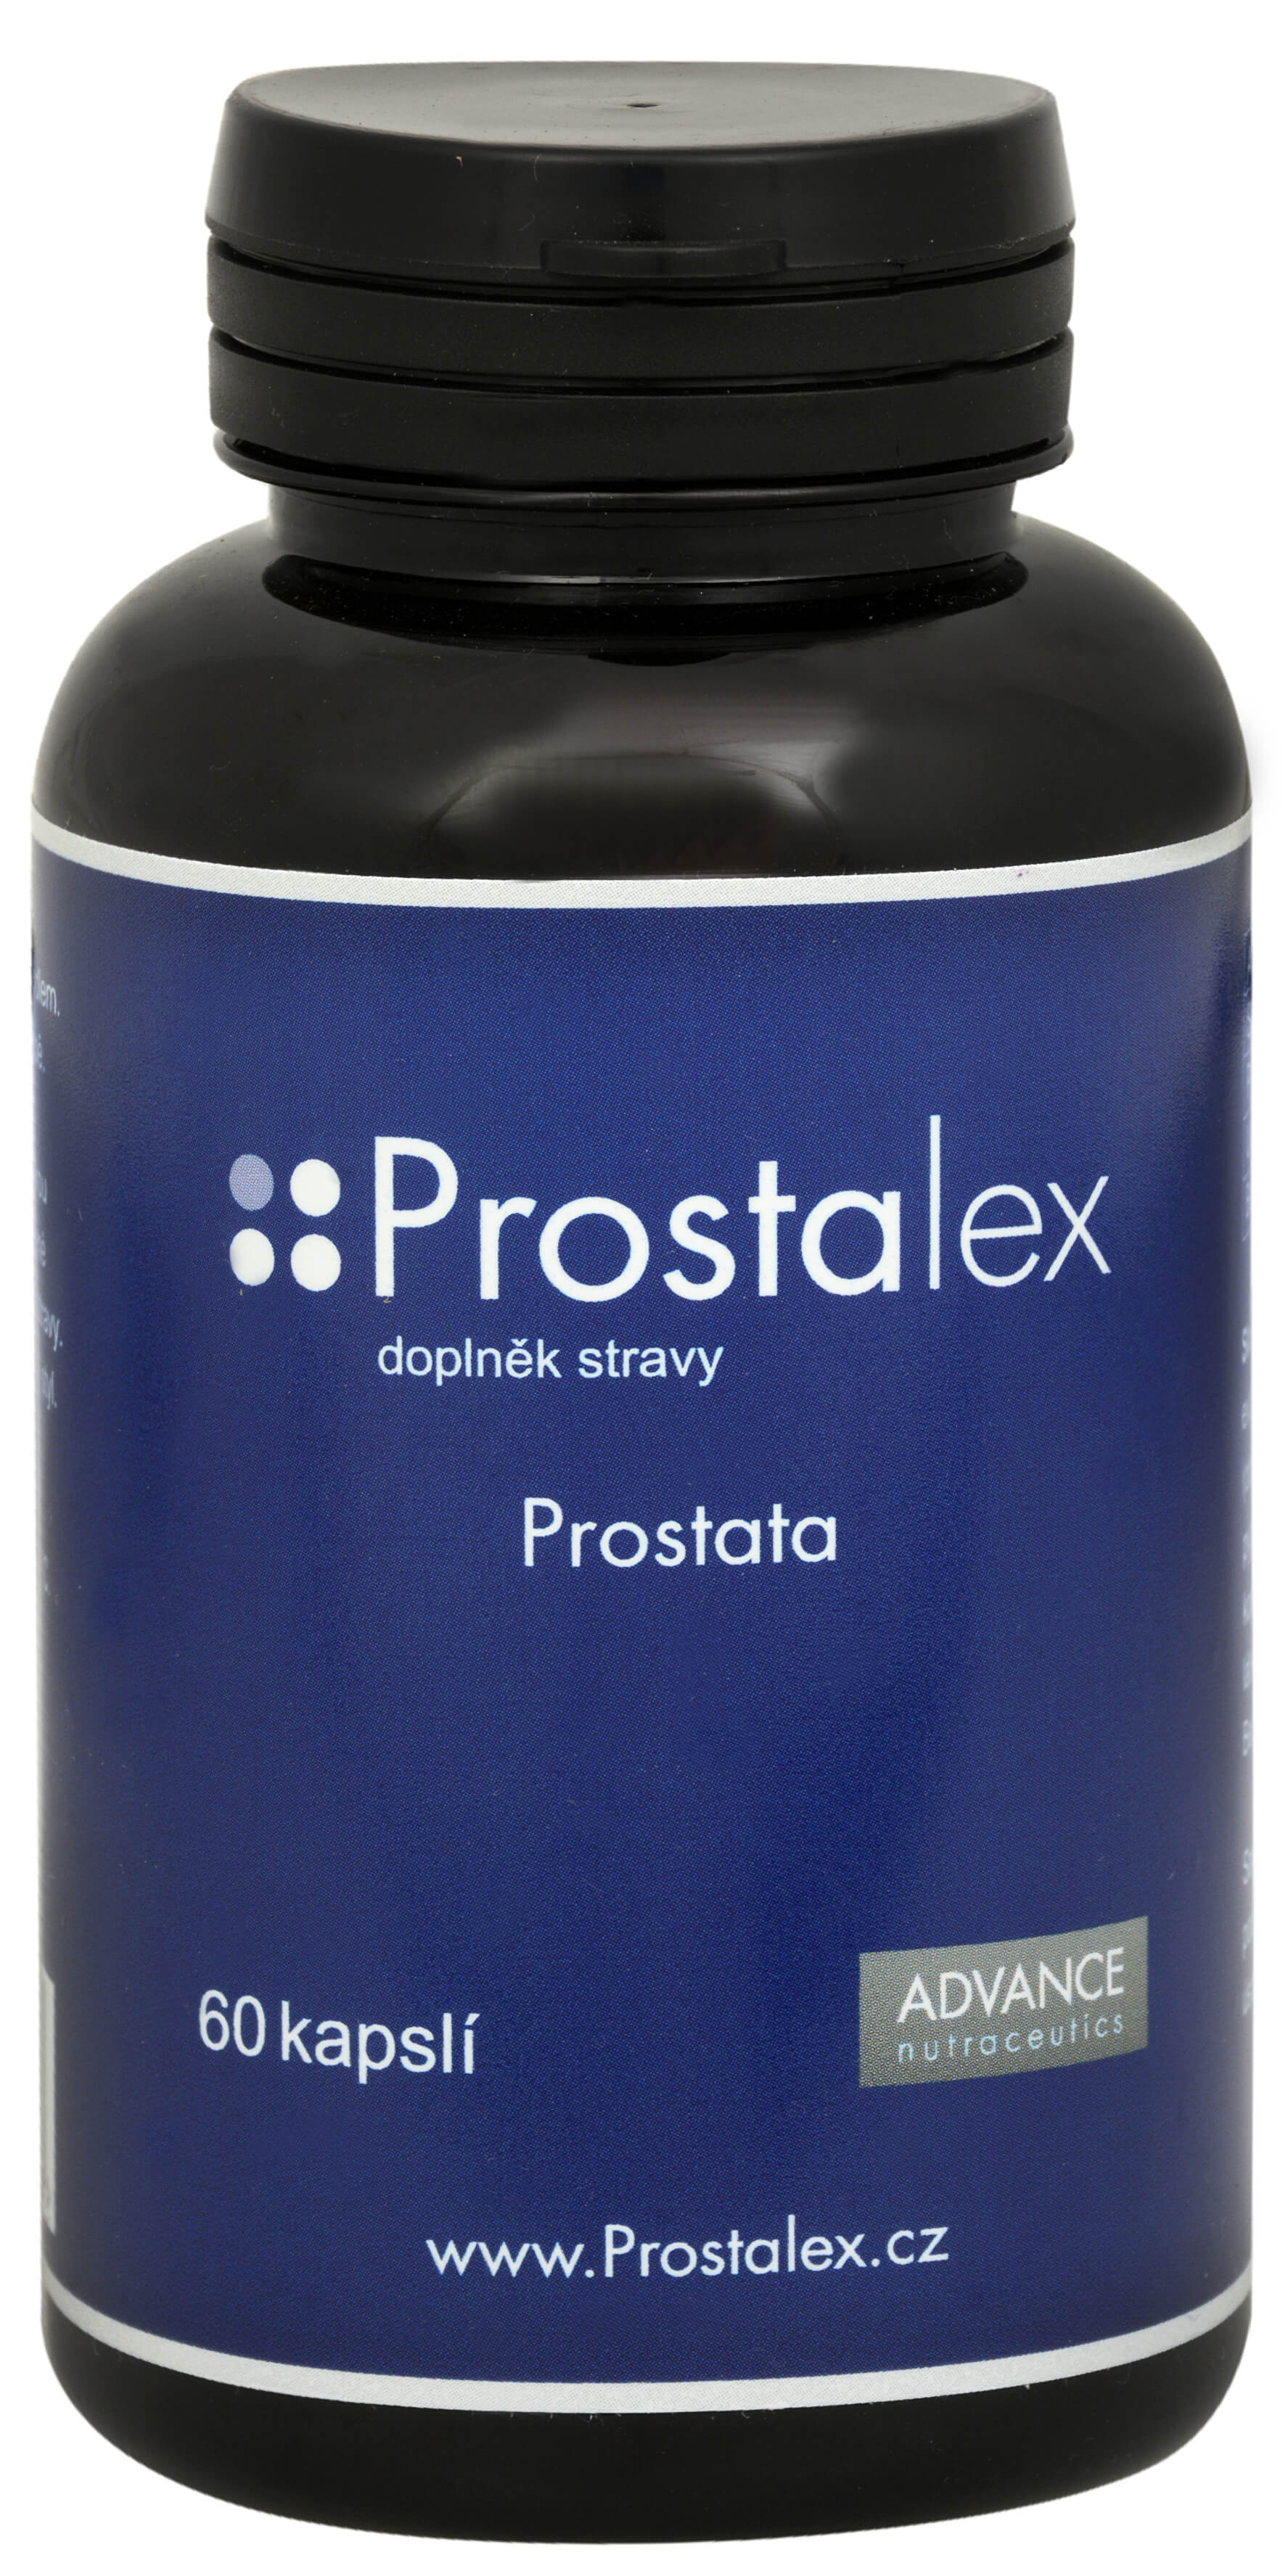 Zobrazit detail výrobku Advance nutraceutics Prostalex 60 kapslí